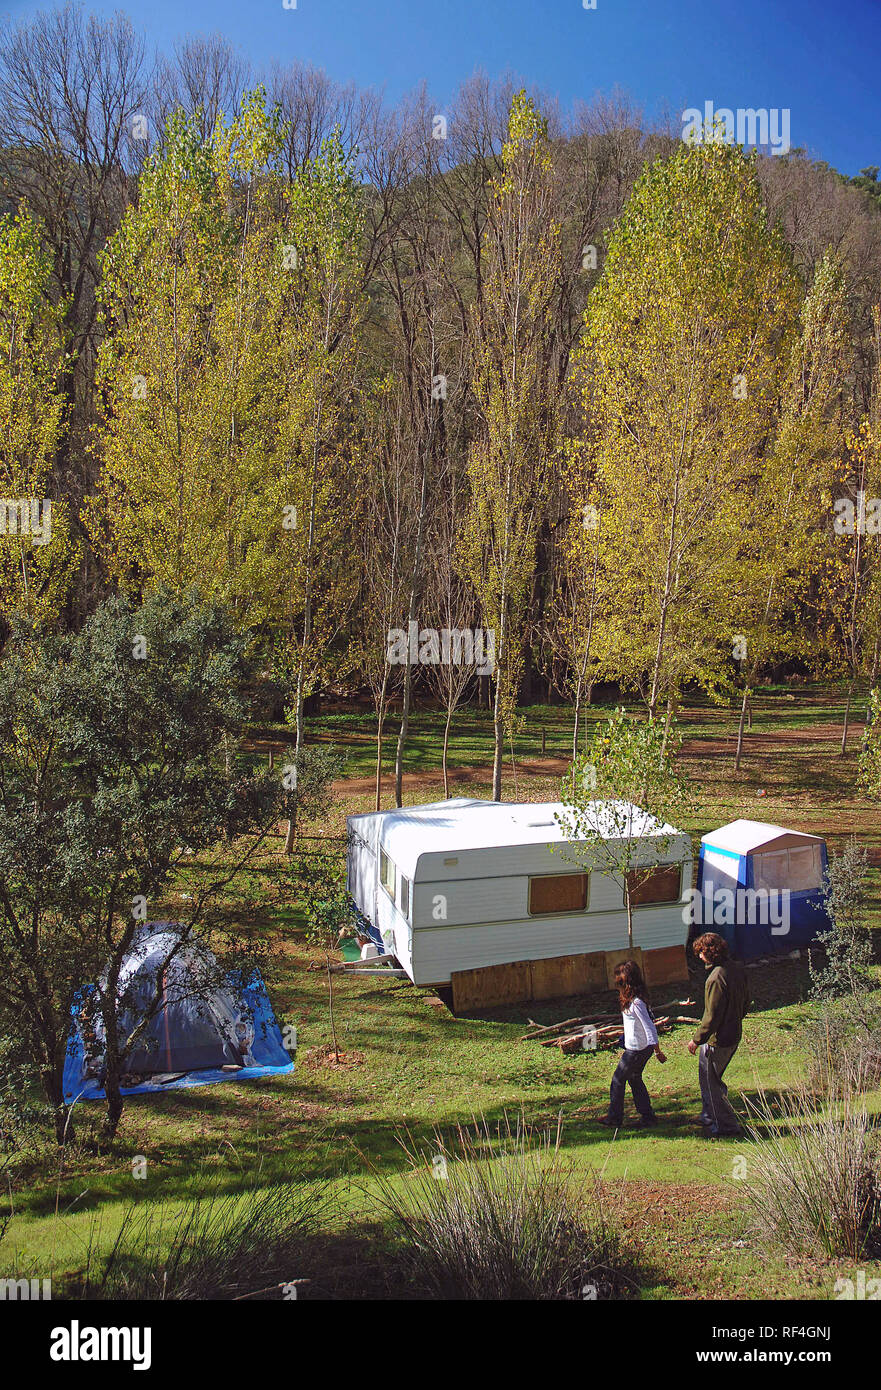 Le Parc Naturel de la Sierra Norte - Camping Batan de las Monjas. San Nicolas del Puerto. Province de Séville. Région de l'Andalousie. L'Espagne. L'Europe Banque D'Images